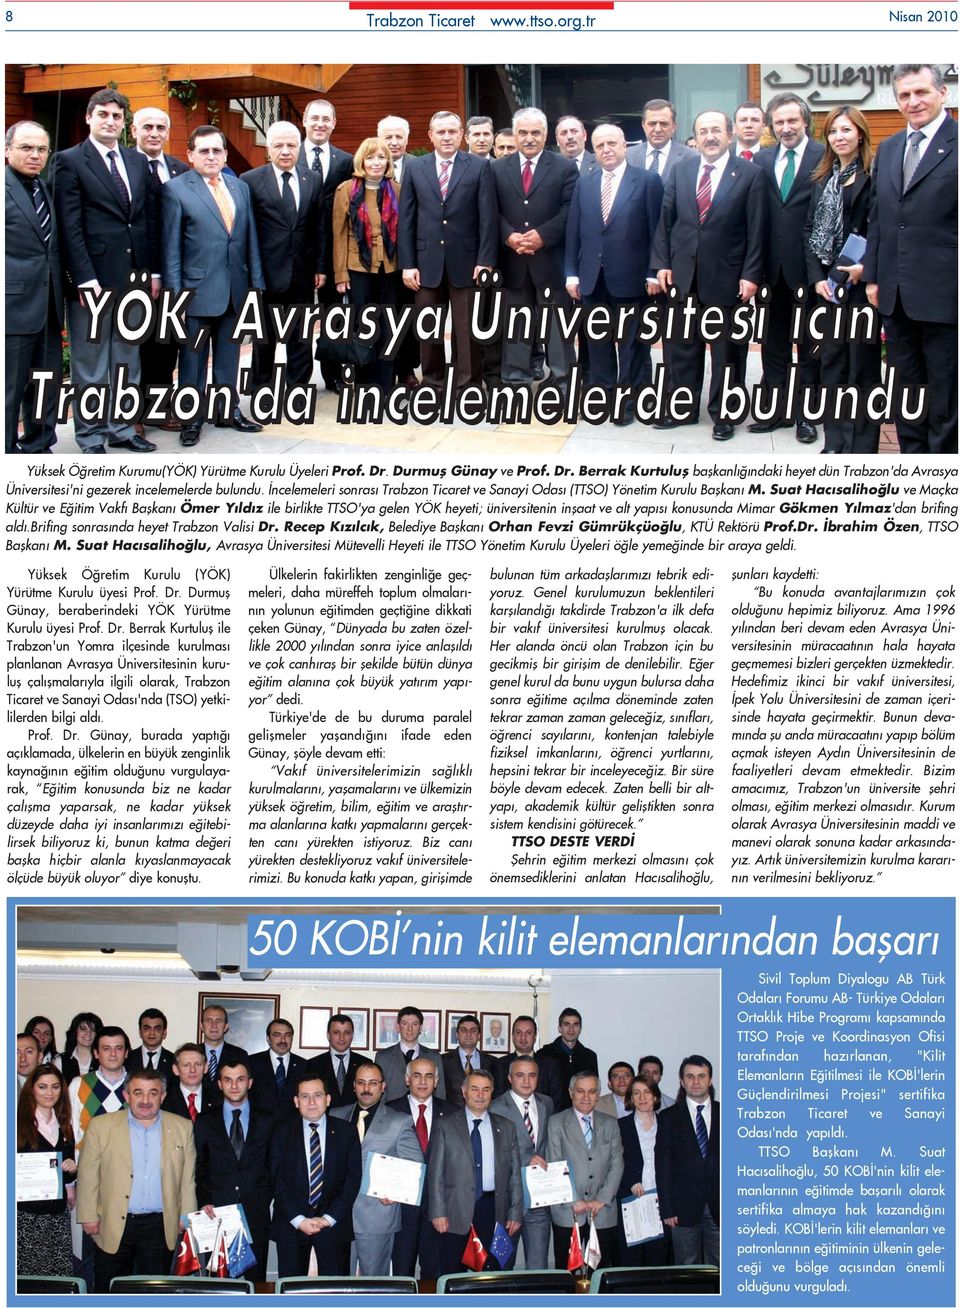 Ýncelemeleri sonrasý Trabzon Ticaret ve Sanayi Odasý (TTSO) Yönetim Kurulu Baþkaný M.